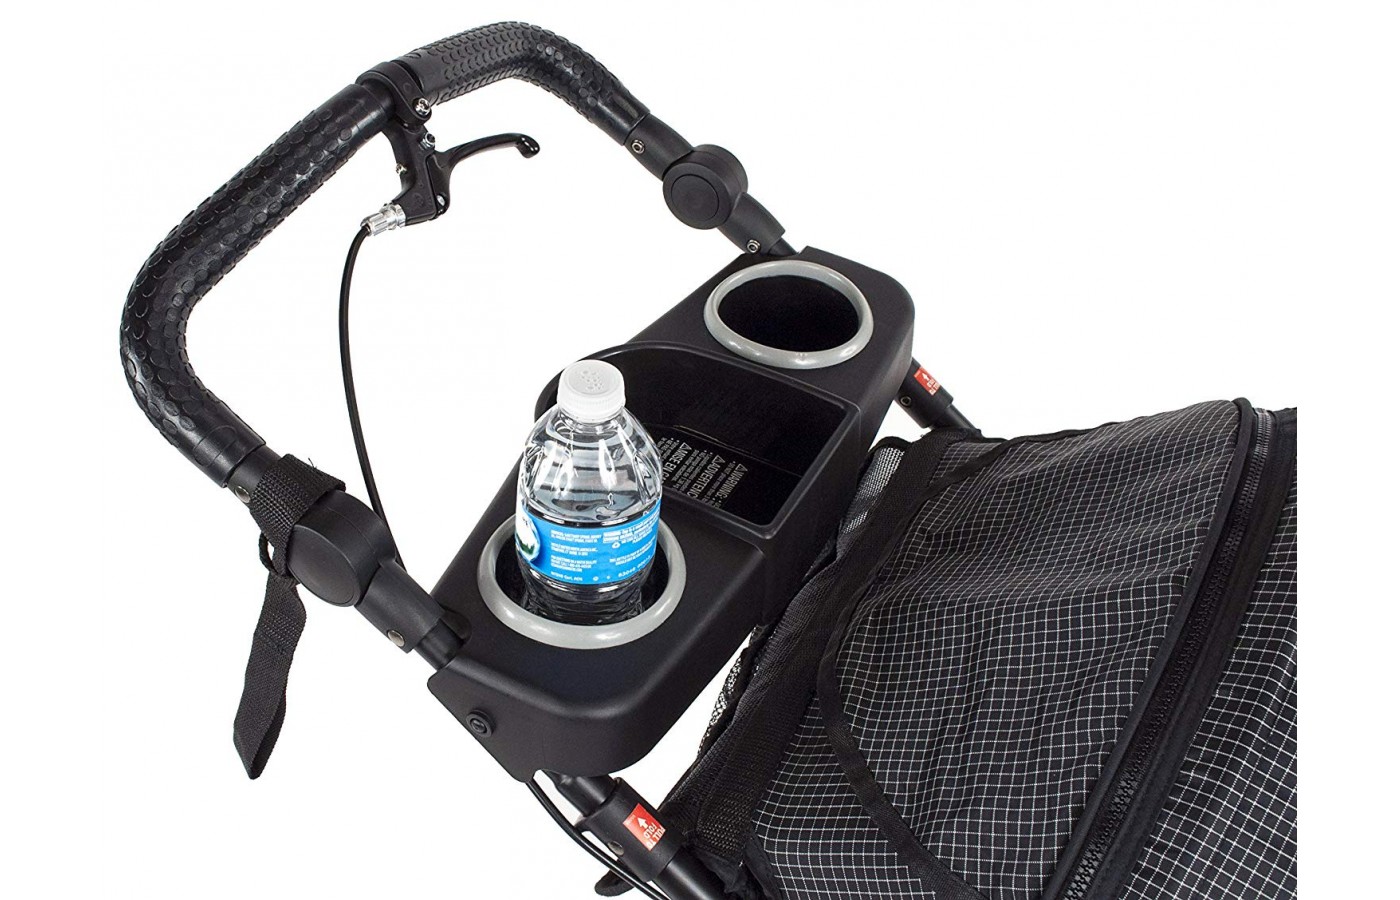 Kolcraft Sprint Pro Jogging Stroller tray